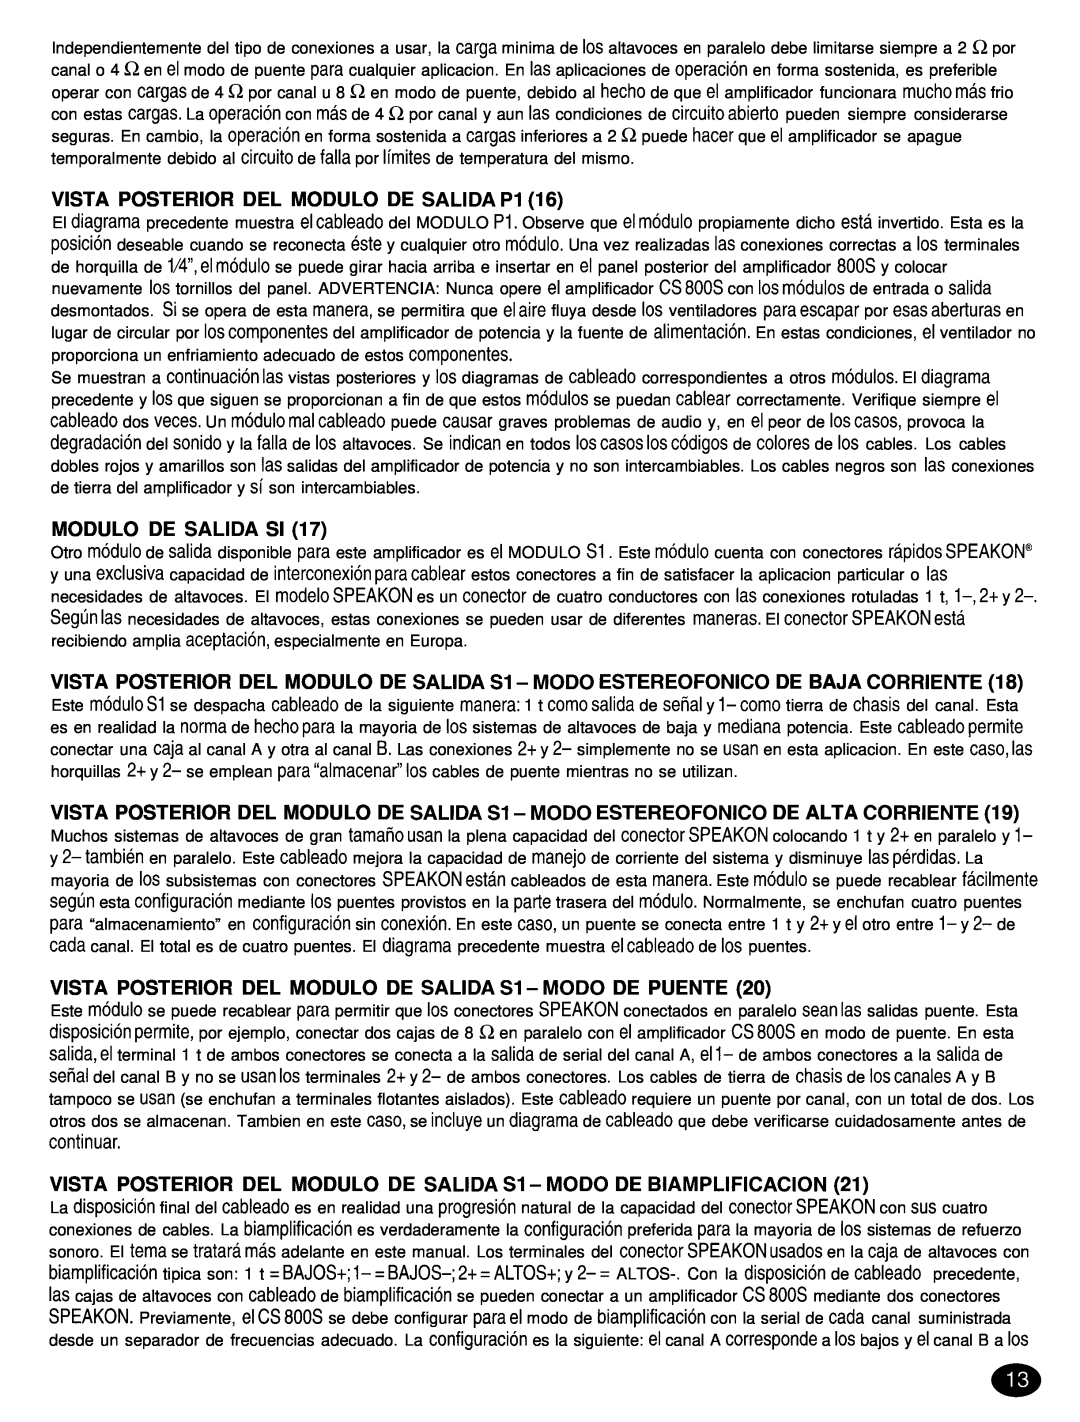 Peavey CS 8OOX manual VISTA POSTERIOR DEL MODULO DE SALIDA Pl, Modulo De Salida Si 